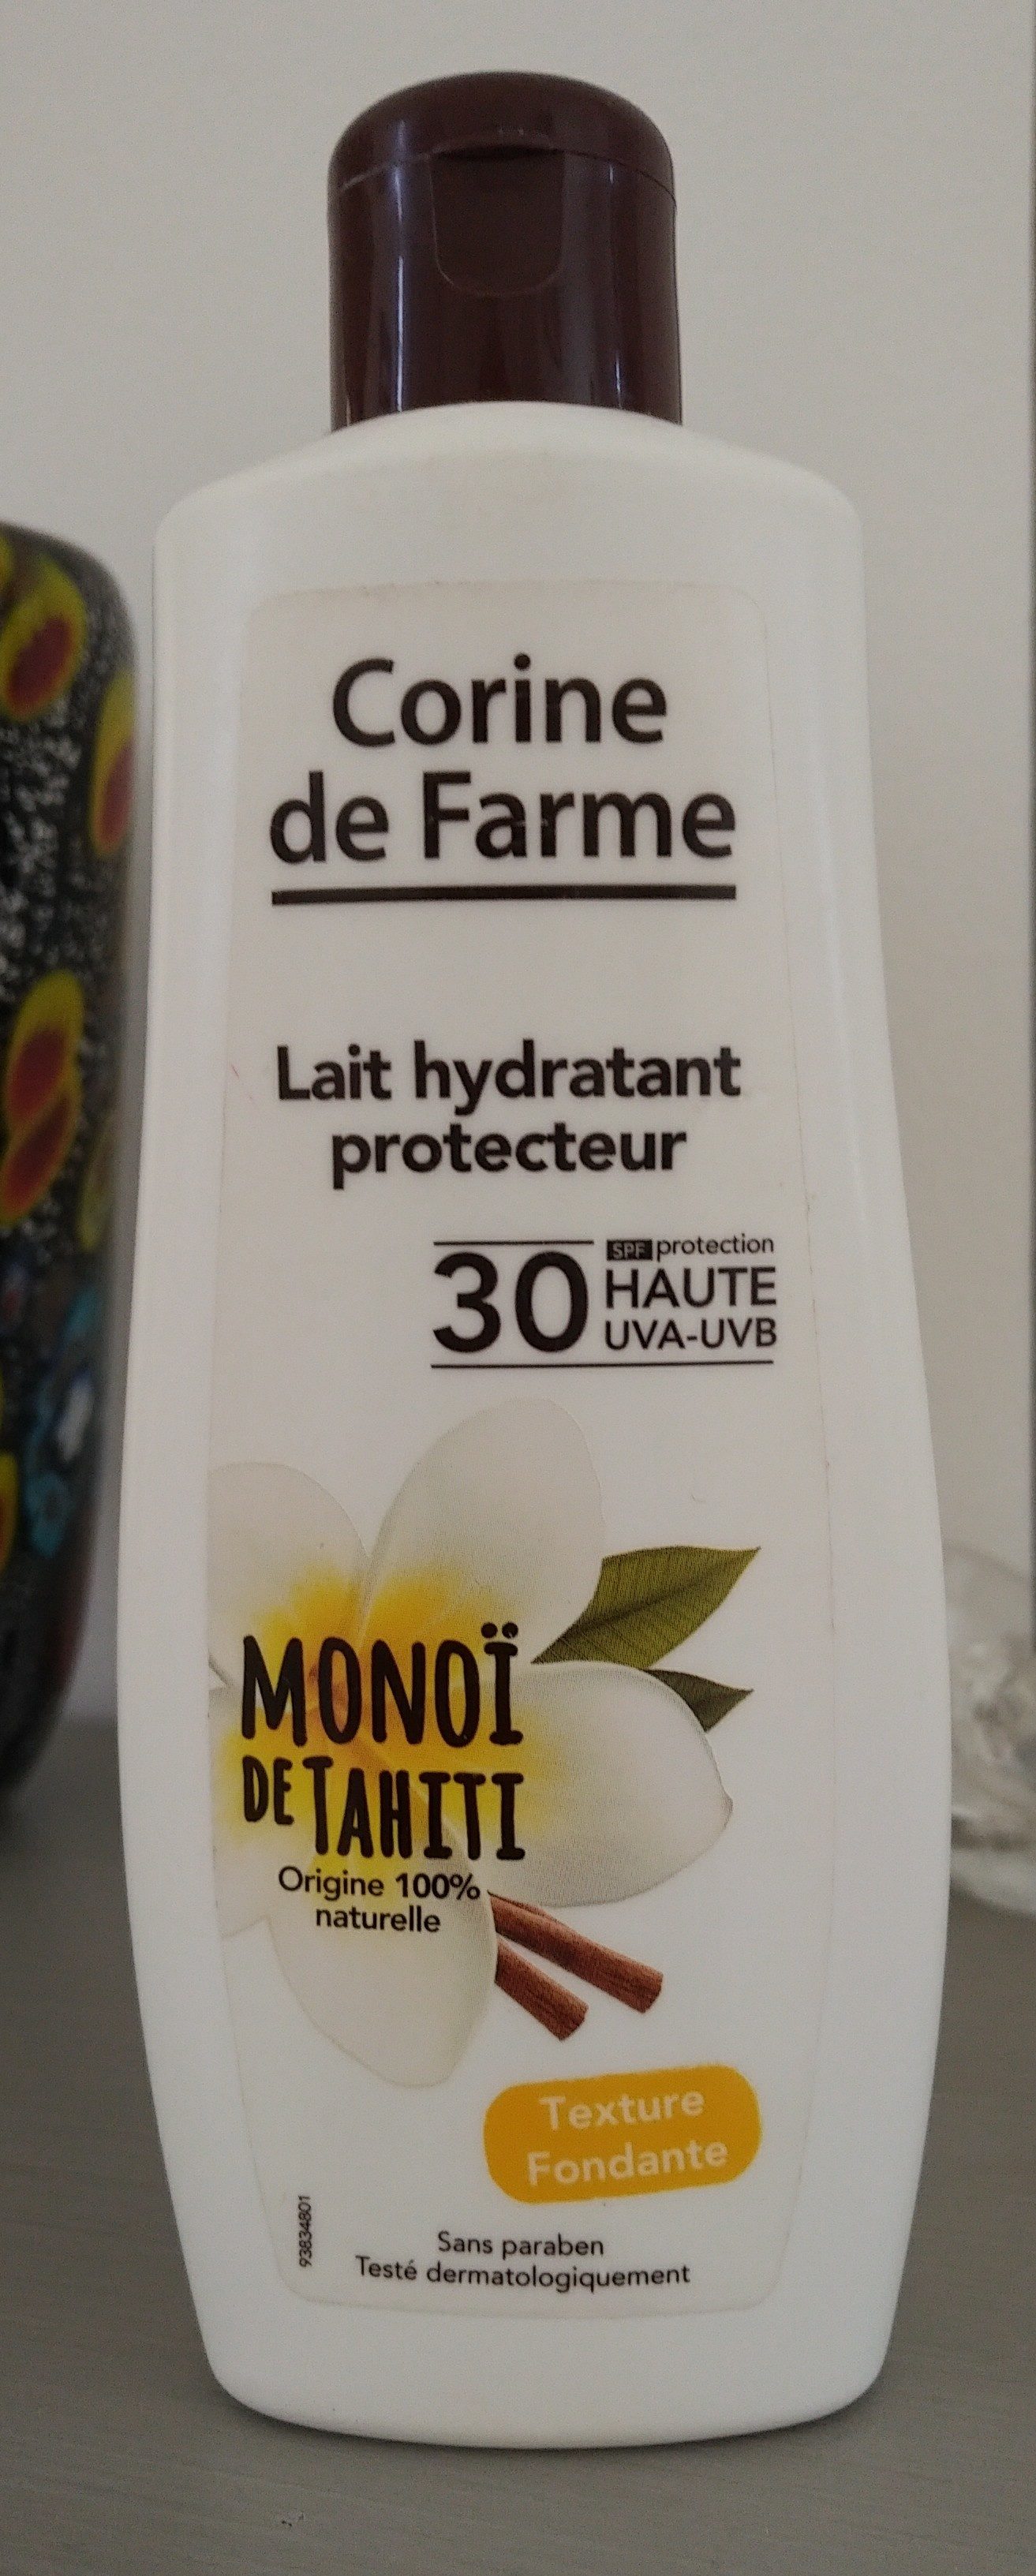 Lait hydratant protecteur monoï de tahiti - Product - fr